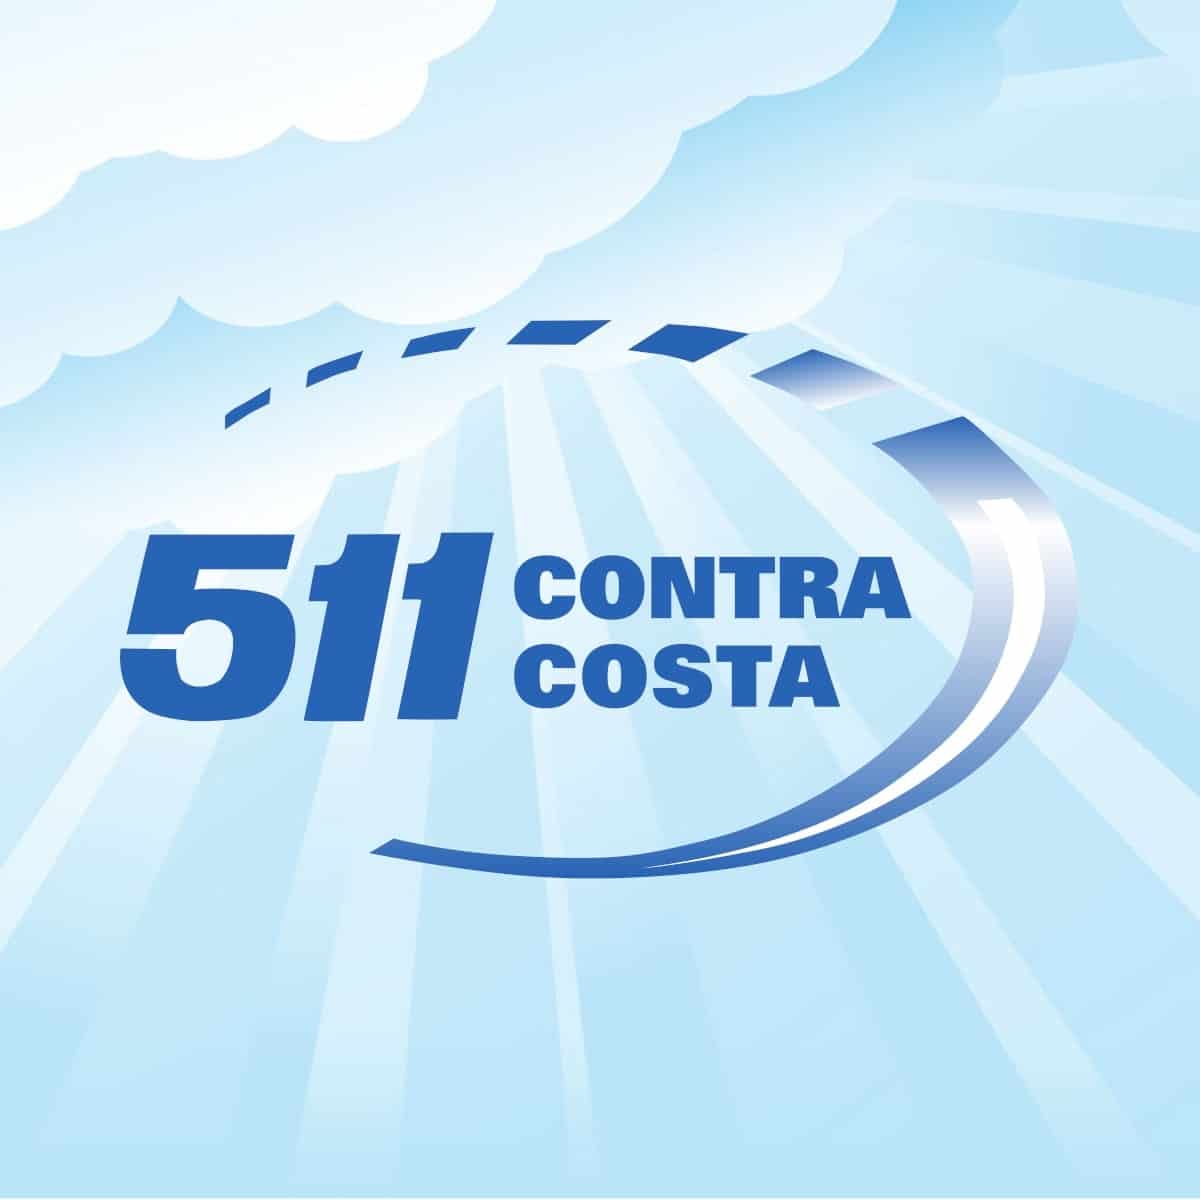 (c) 511contracosta.org